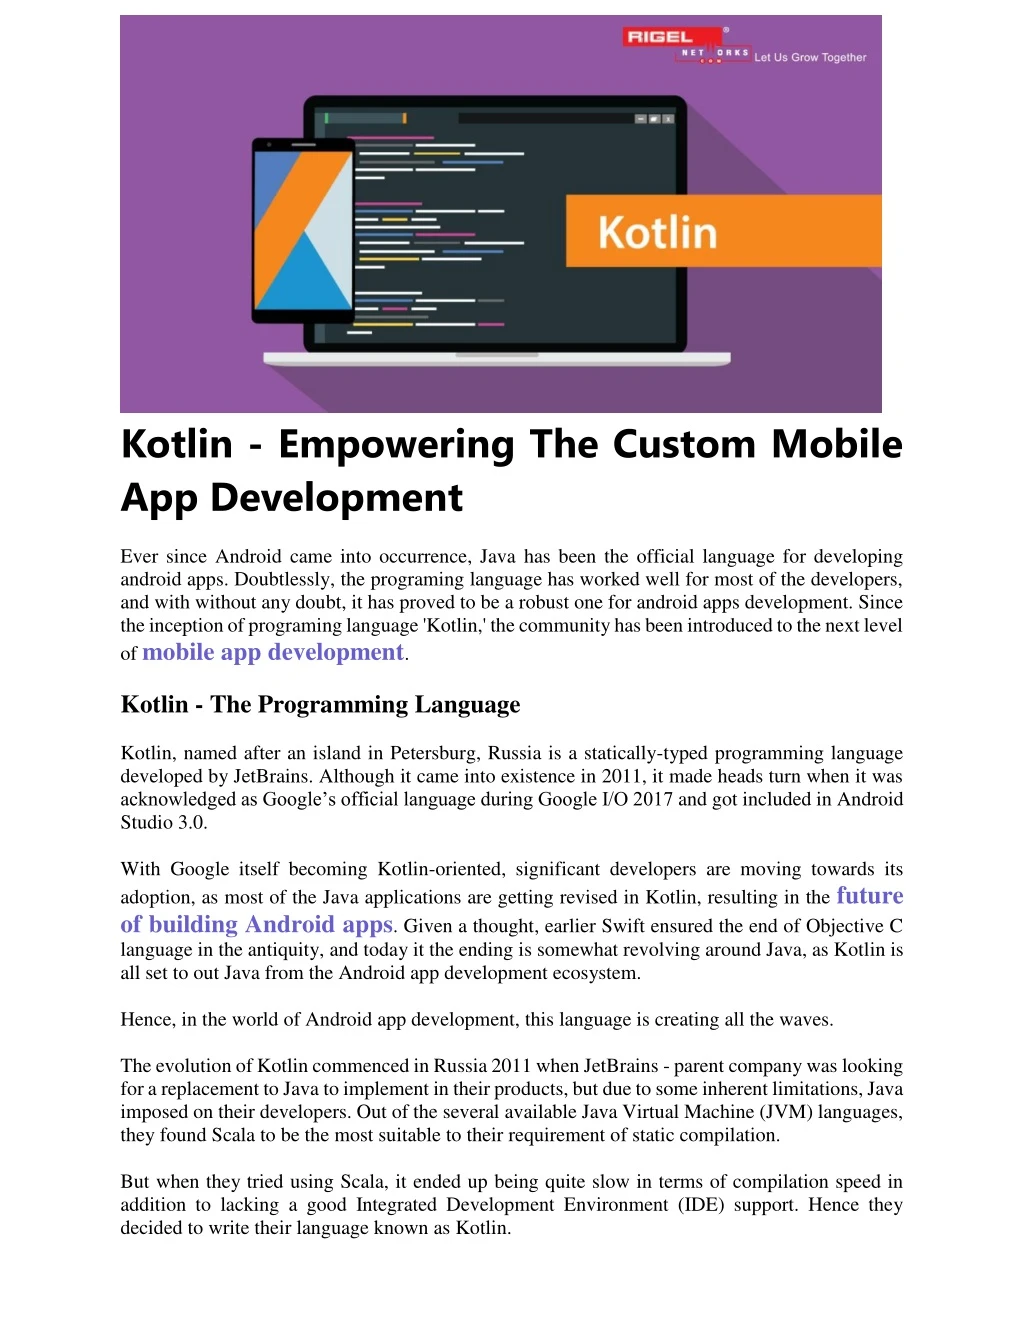 kotlin empowering the custom mobile